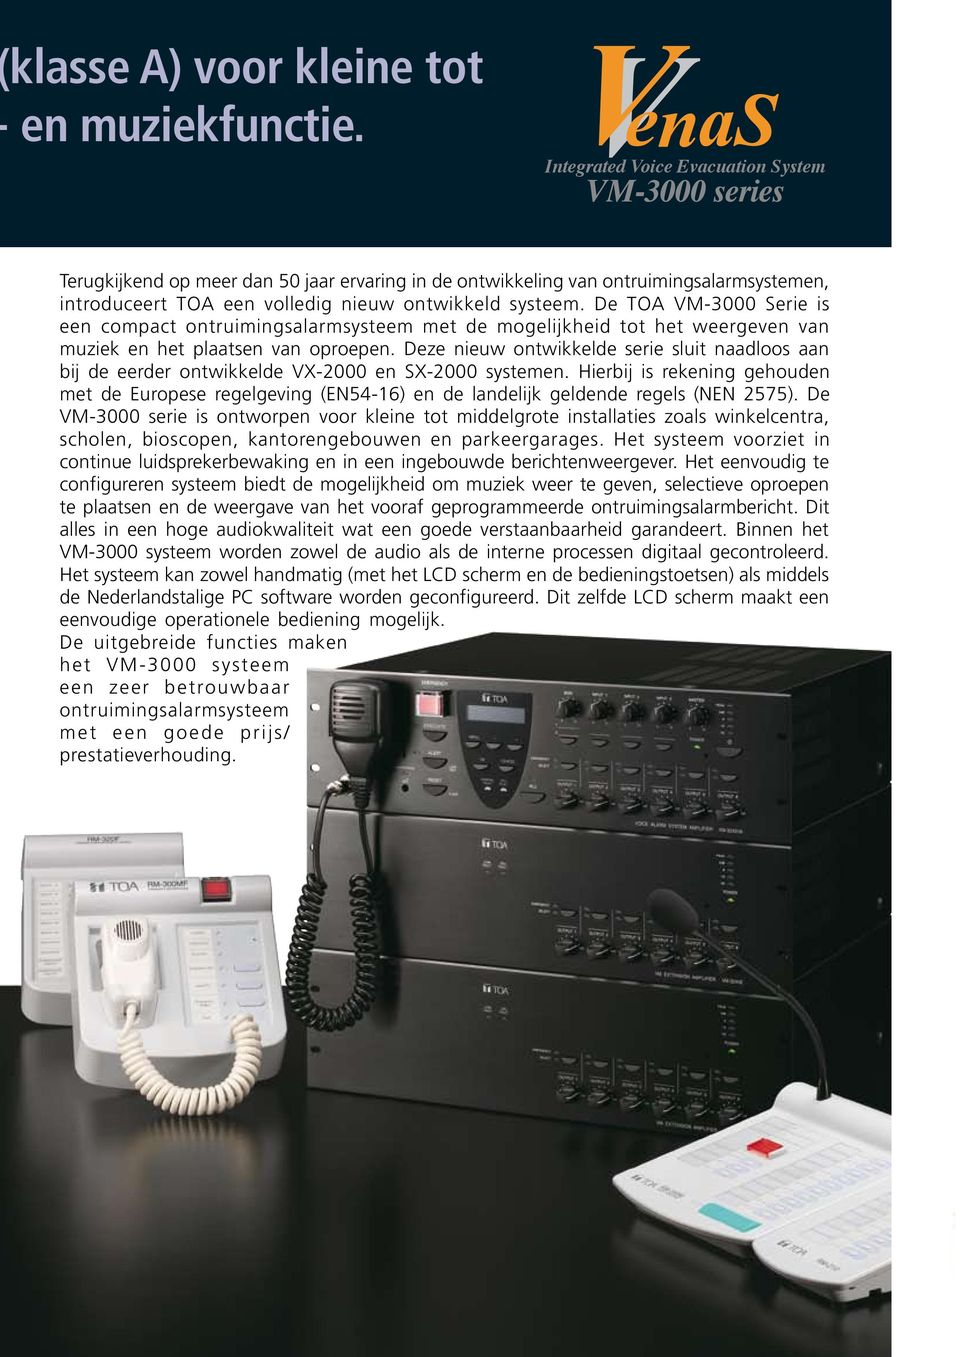 De TOA VM-3000 Serie is een compact ontruimingsalarmsysteem met de mogelijkheid tot het weergeven van muziek en het plaatsen van oproepen.